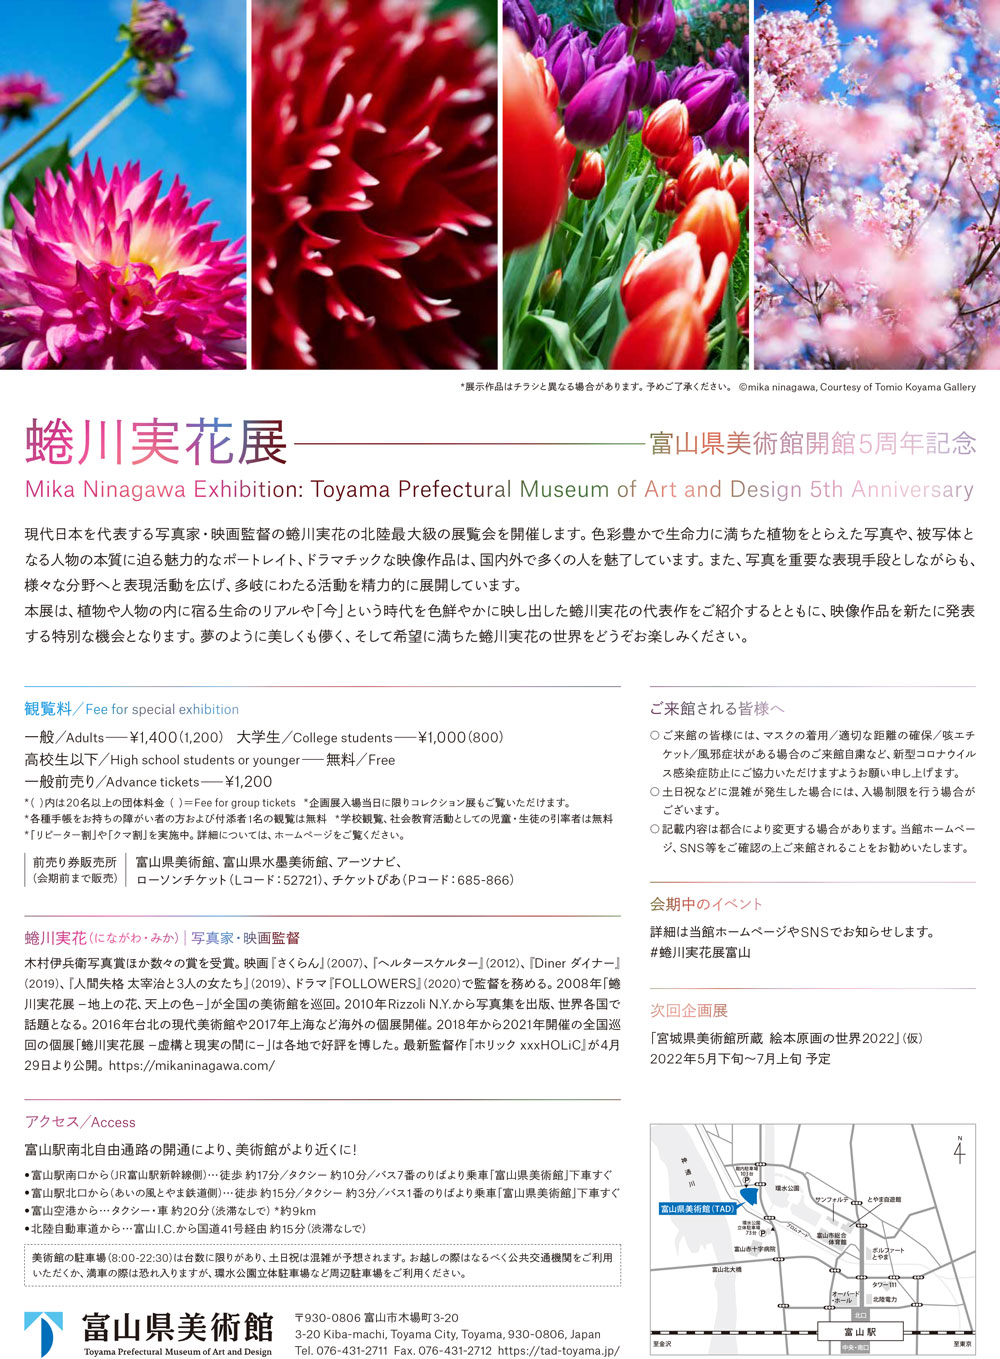 富山県美術館で開催される「蜷川実花展 富山」の内容